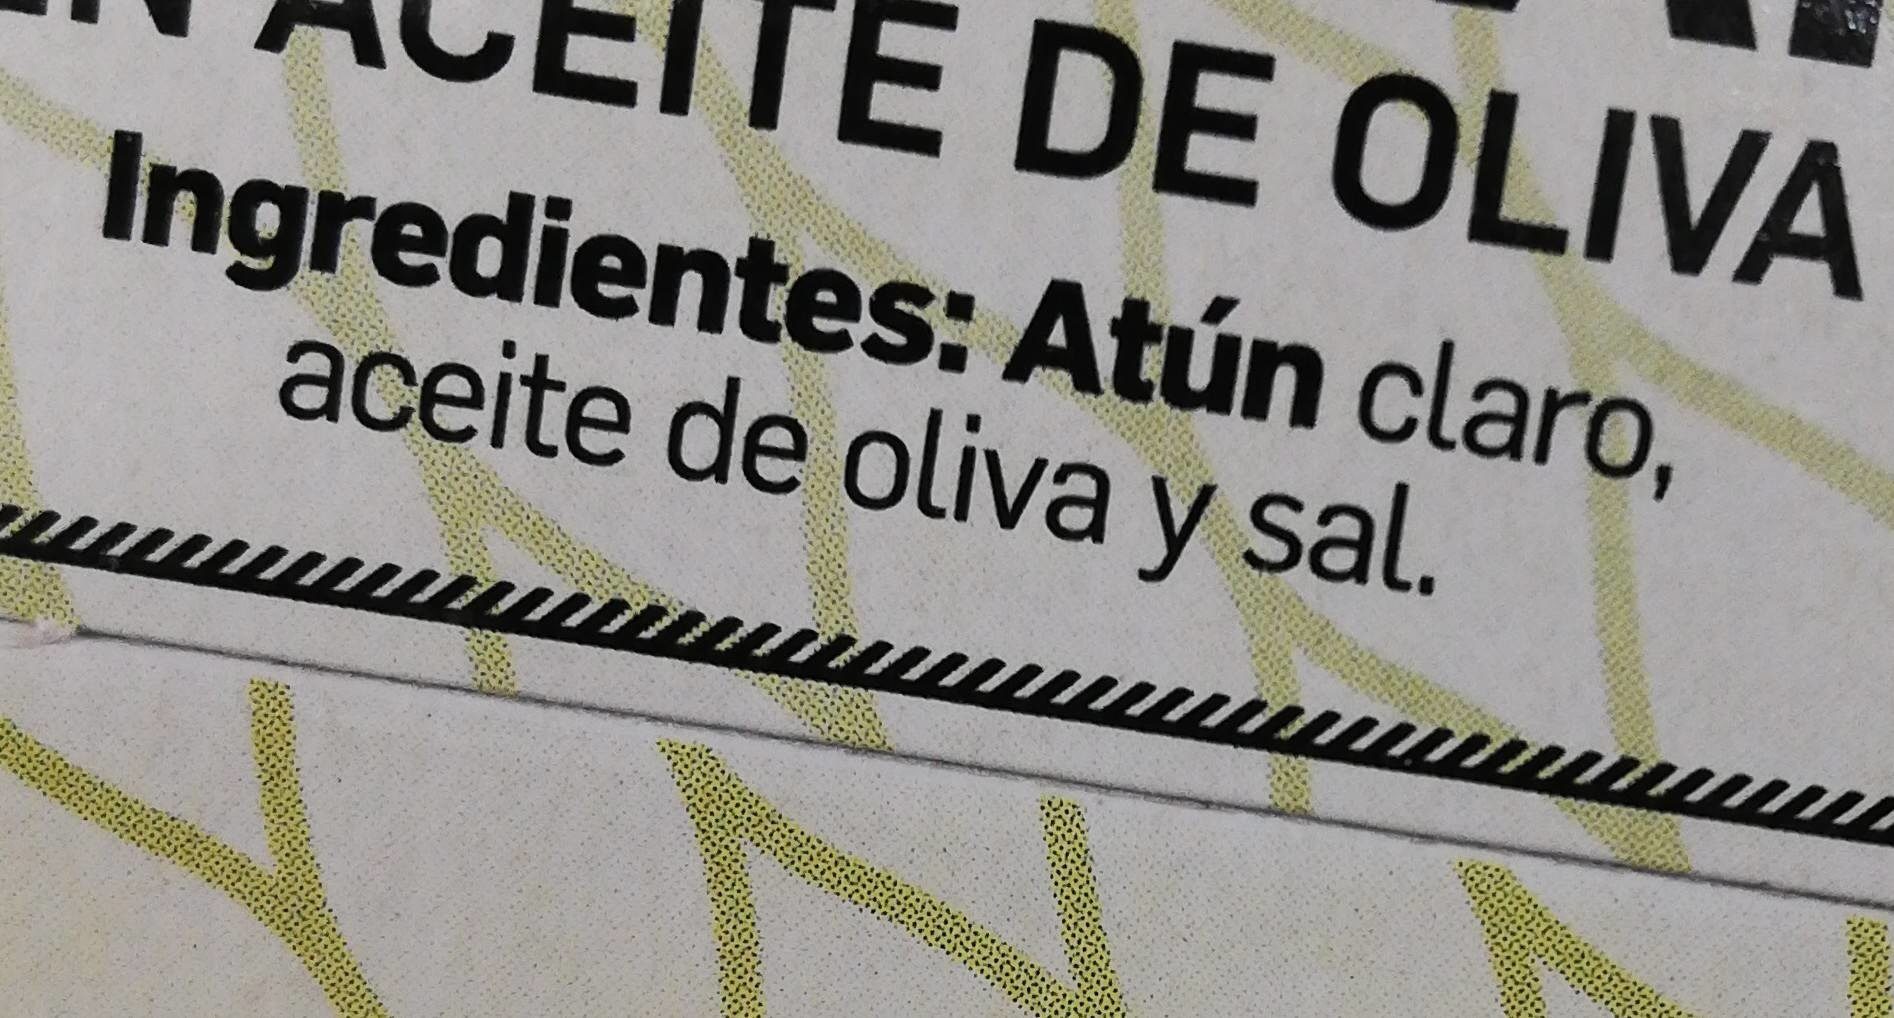 Atún claro en aceite de oliva - Ingredients - fr